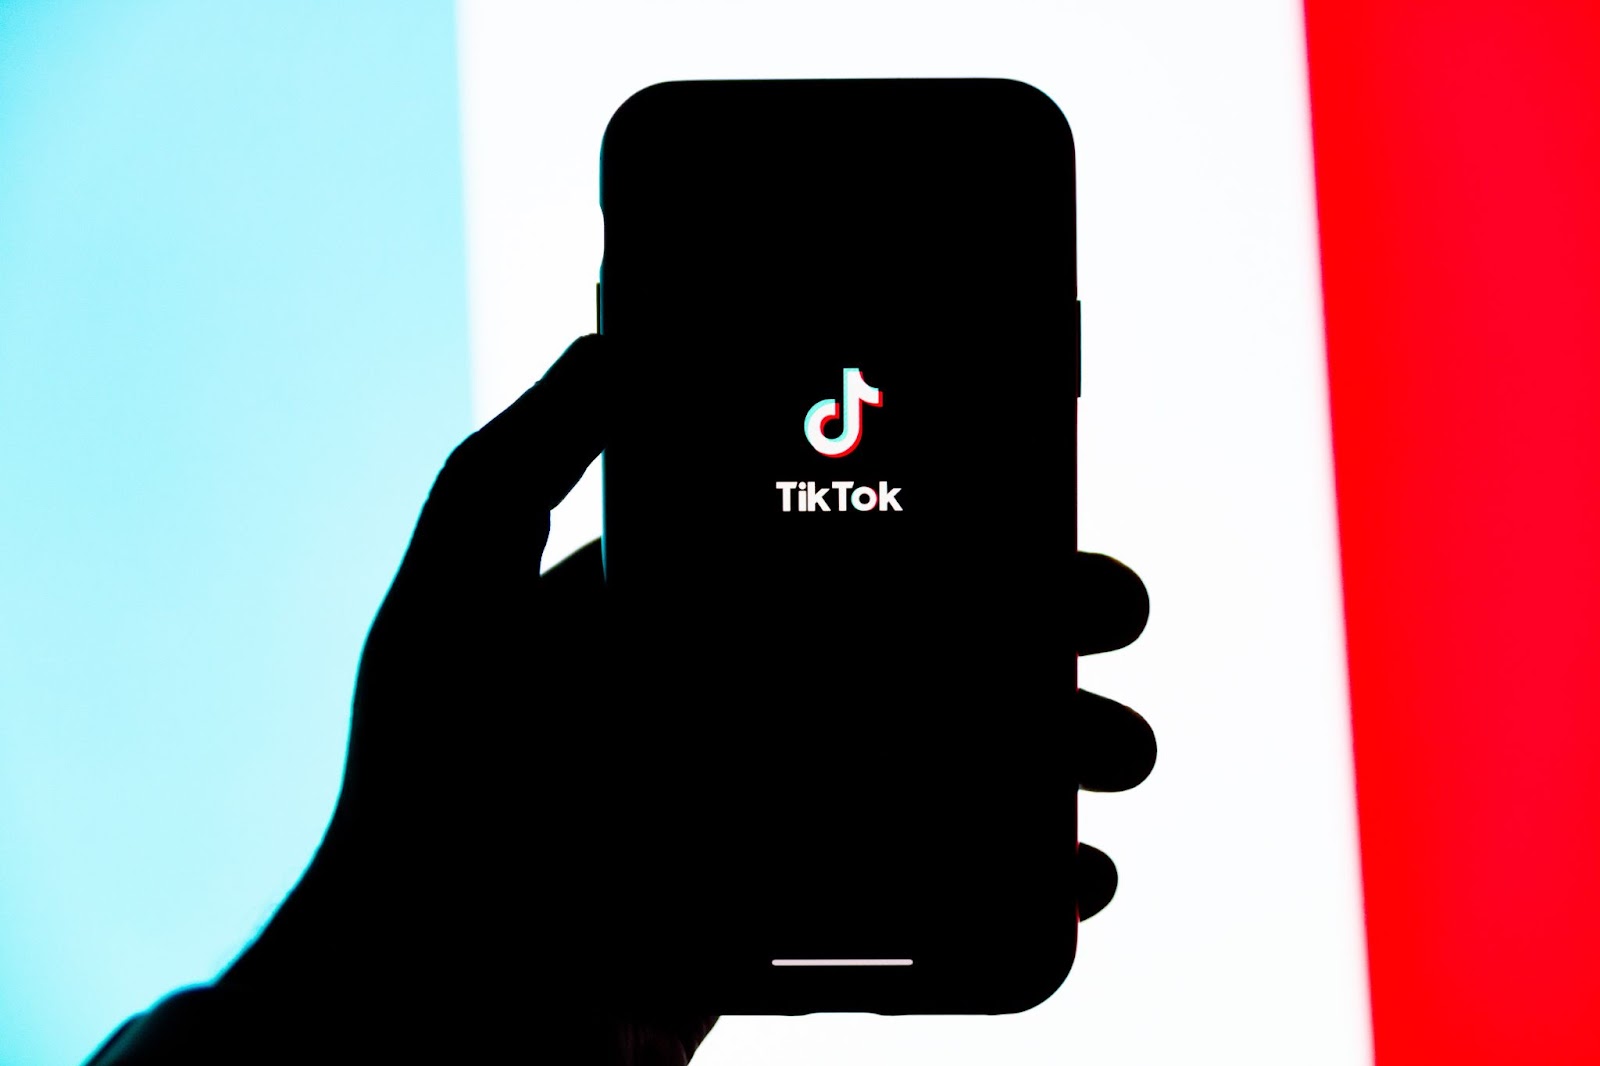 TikTok app on mobile